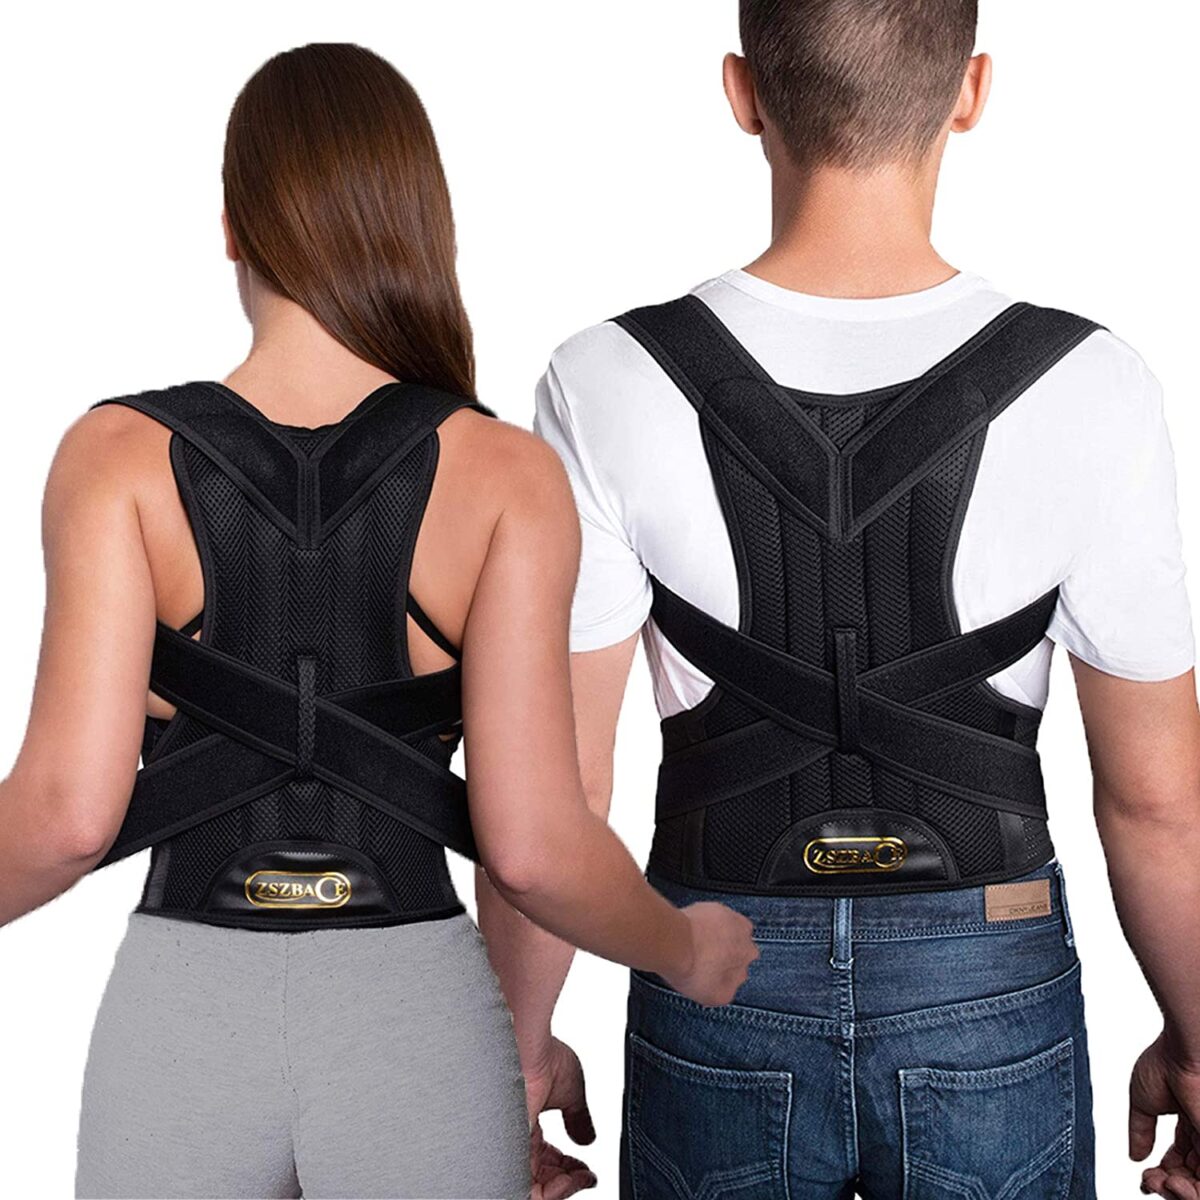 Back Support Belt Posture Corrector Brace Shoulder for Back Pain Relief, Keep Your Spine Safe and Adjustable – Model: YC 7814